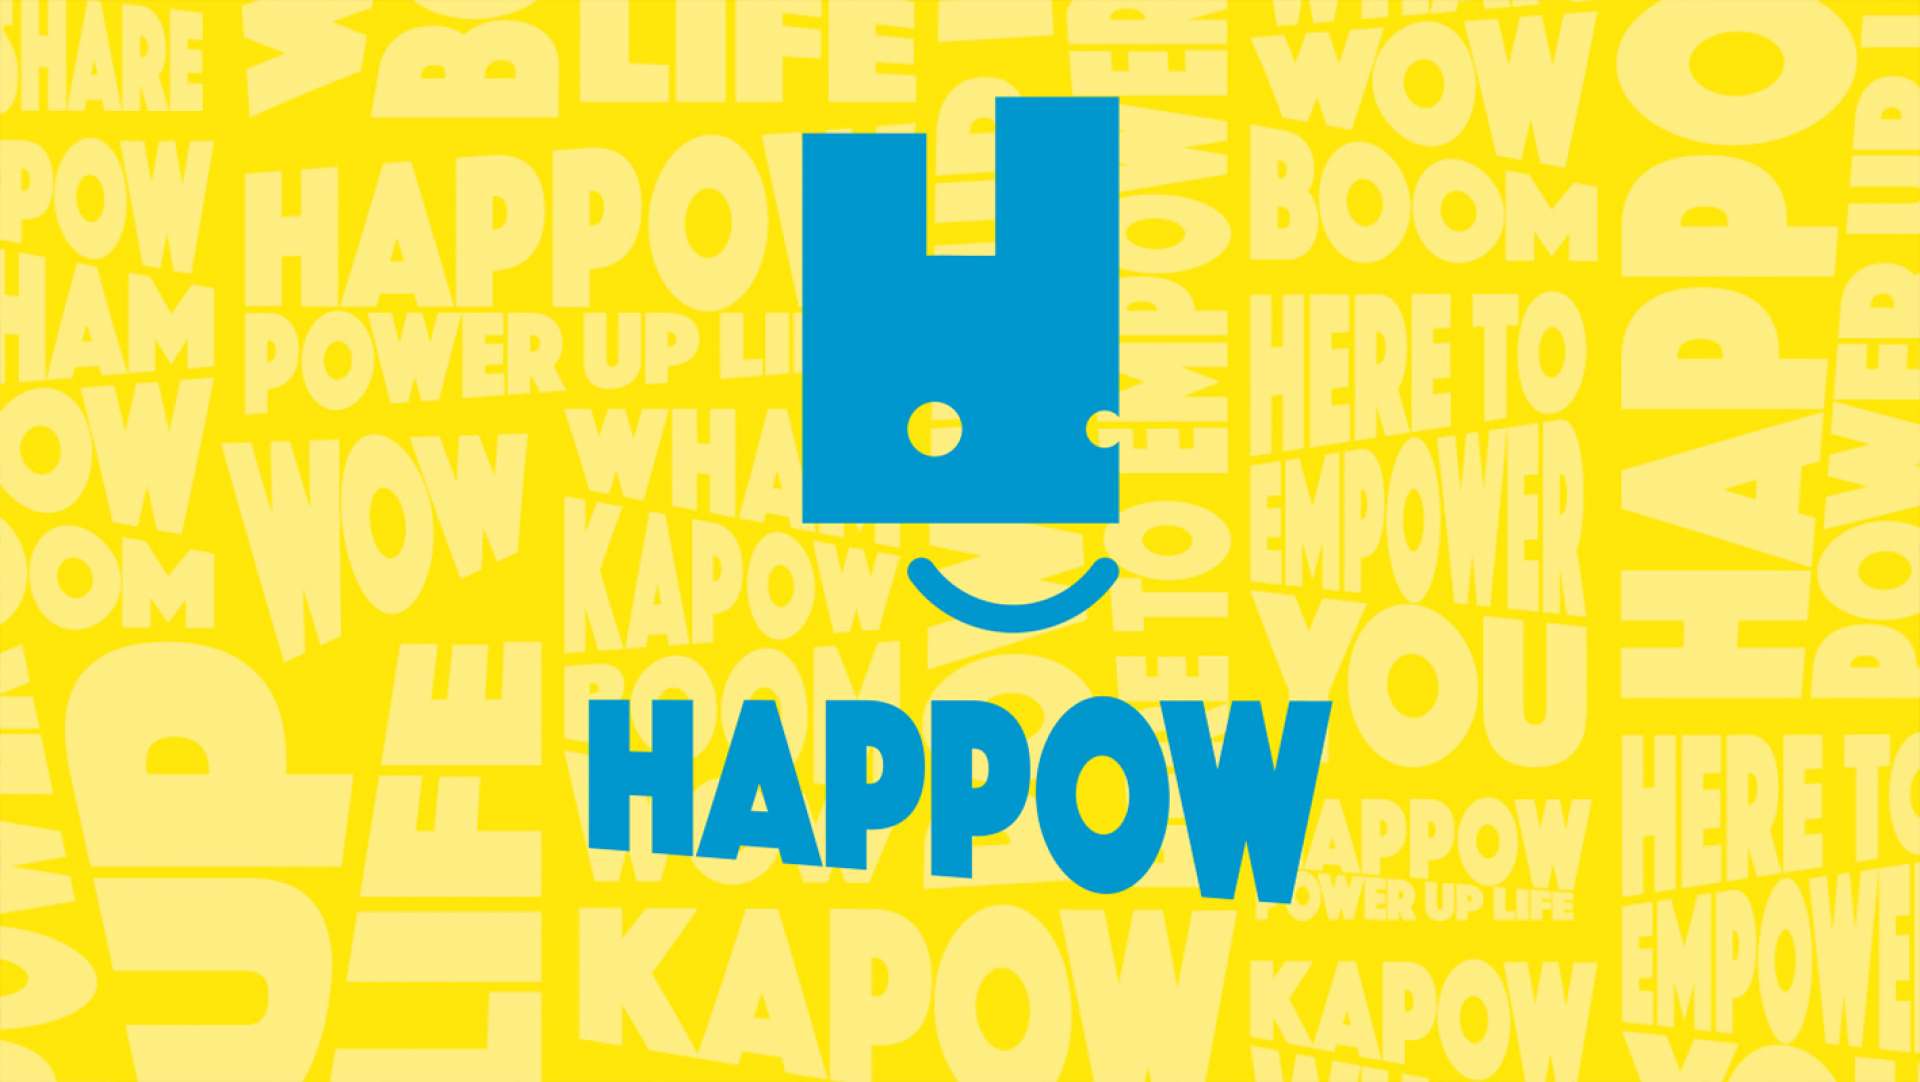 Happy Birthday to the amazing Happow